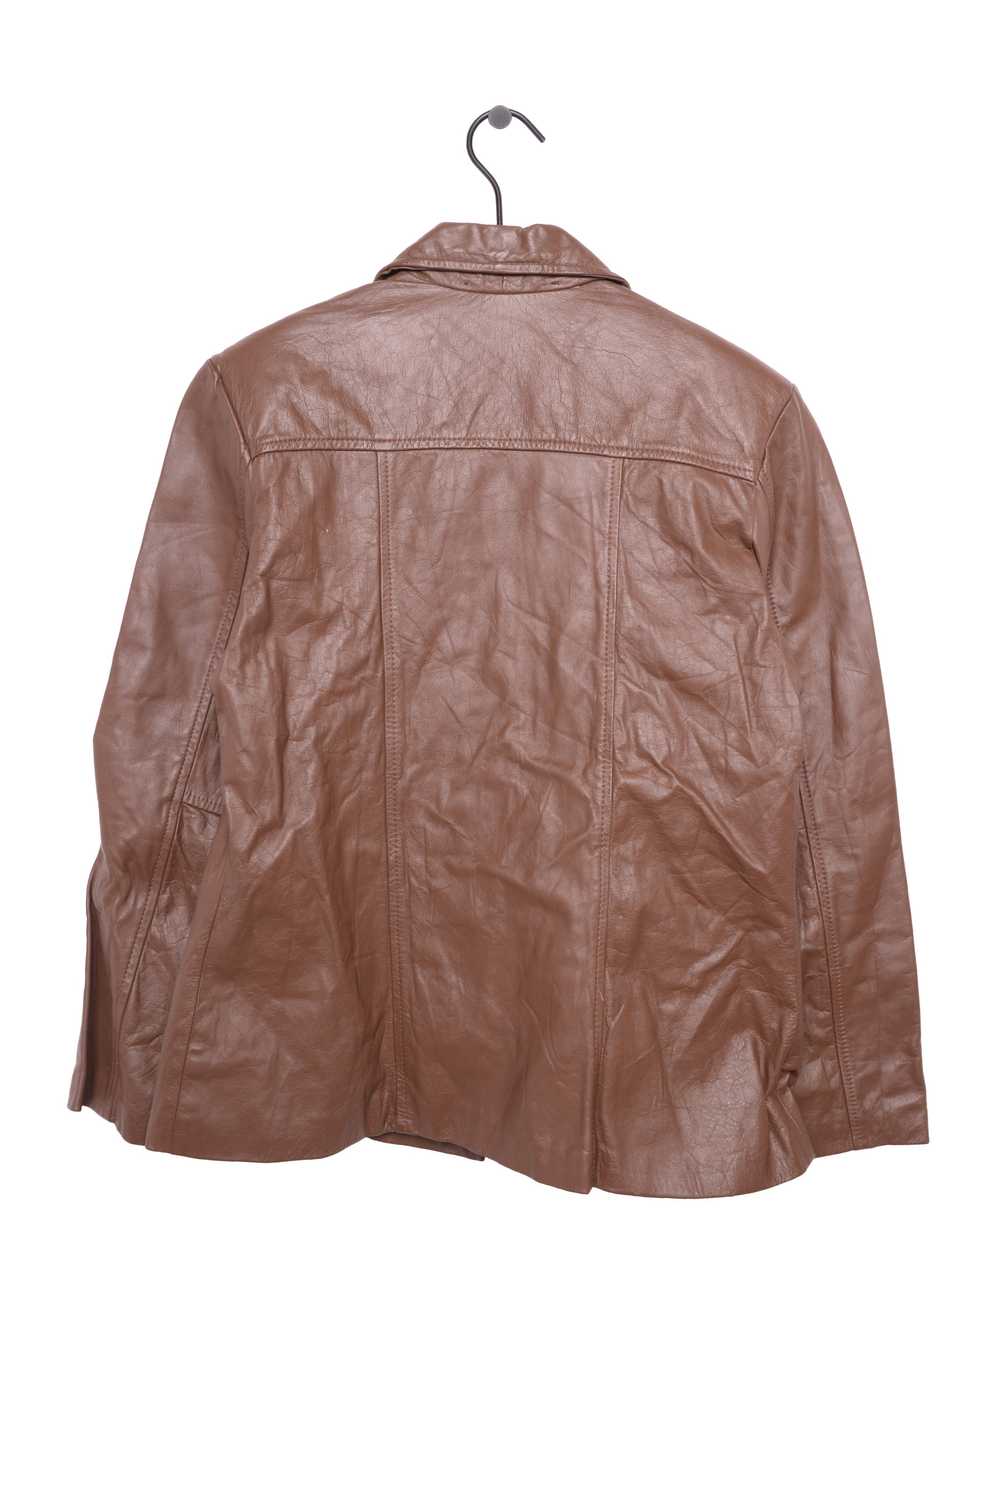 1970s Caramel Leather Jacket - image 3